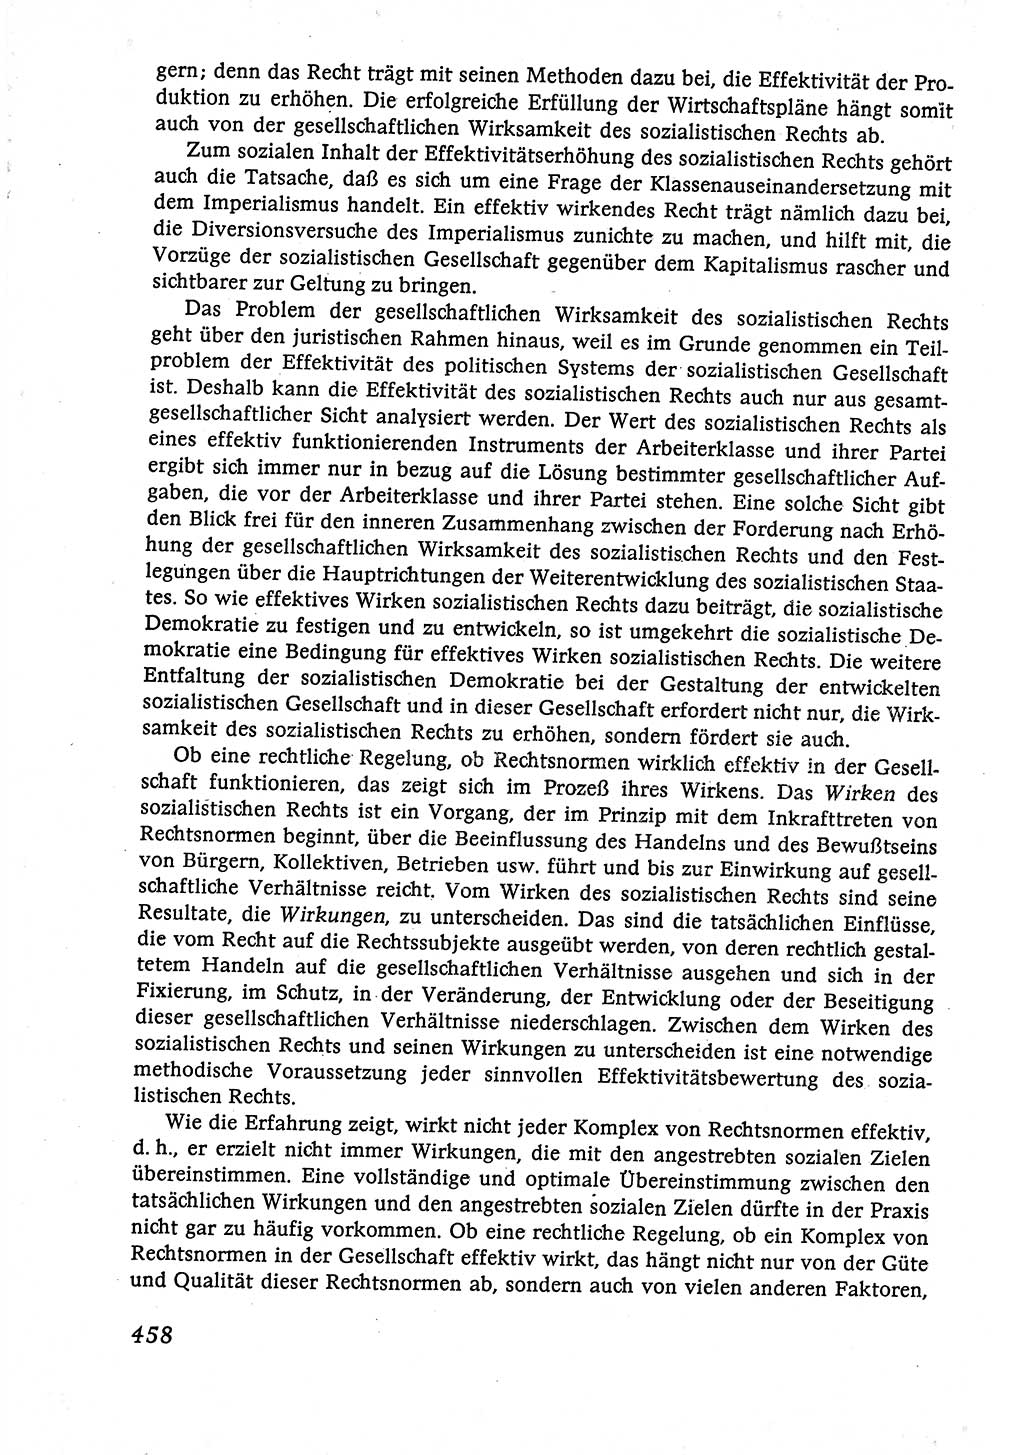 Marxistisch-leninistische (ML) Staats- und Rechtstheorie [Deutsche Demokratische Republik (DDR)], Lehrbuch 1980, Seite 458 (ML St.-R.-Th. DDR Lb. 1980, S. 458)